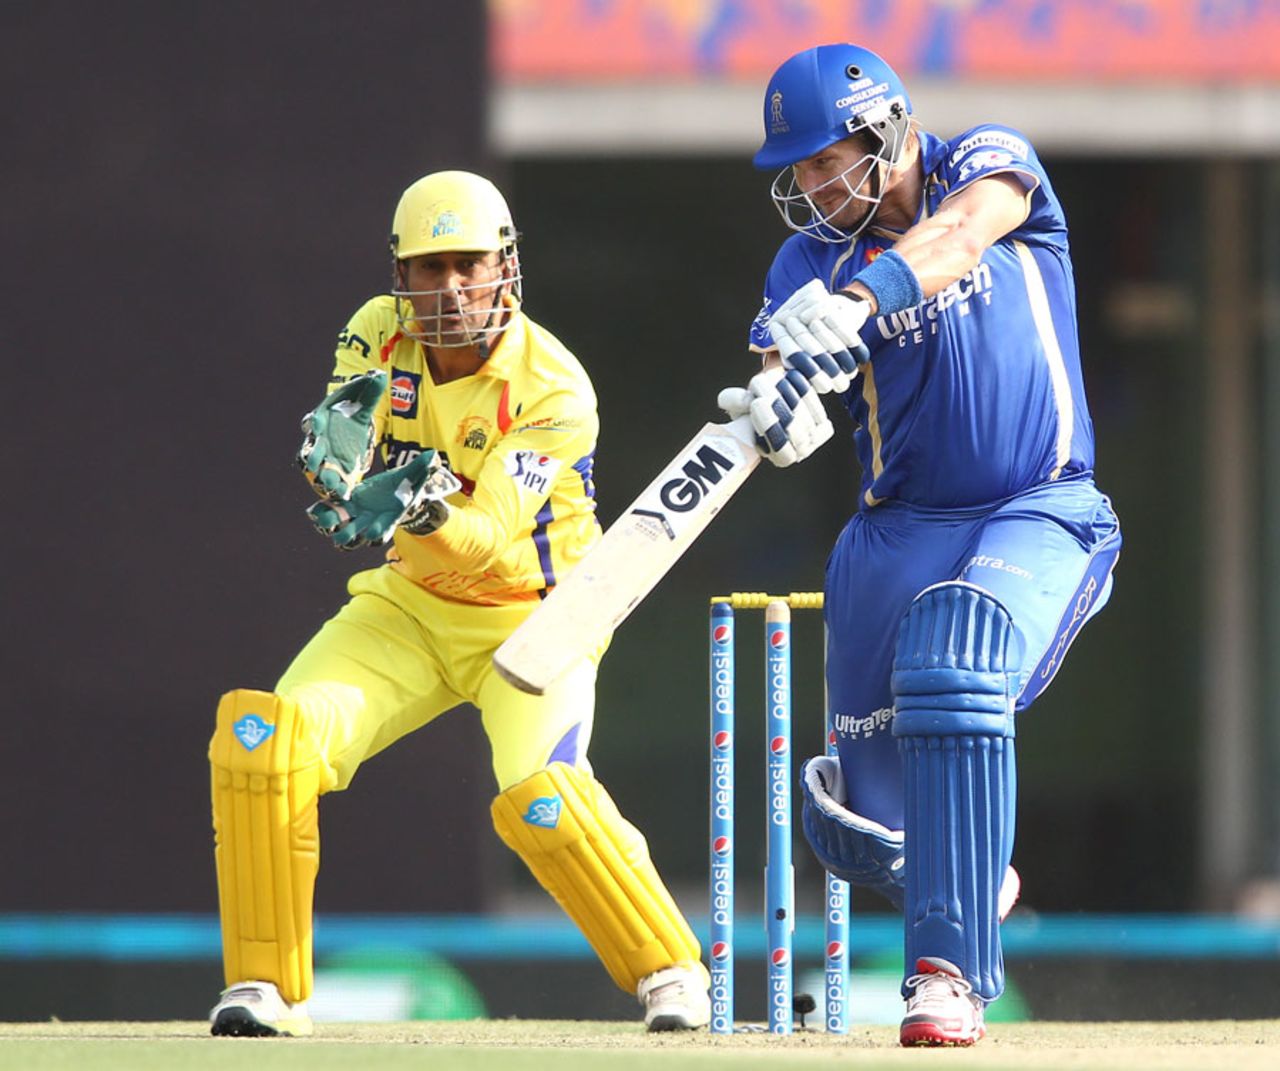 Shane Watson opened the innings and struck a half-century, Chennai Super Kings v Rajasthan Royals, IPL 2014, Ranchi, May 13, 2014